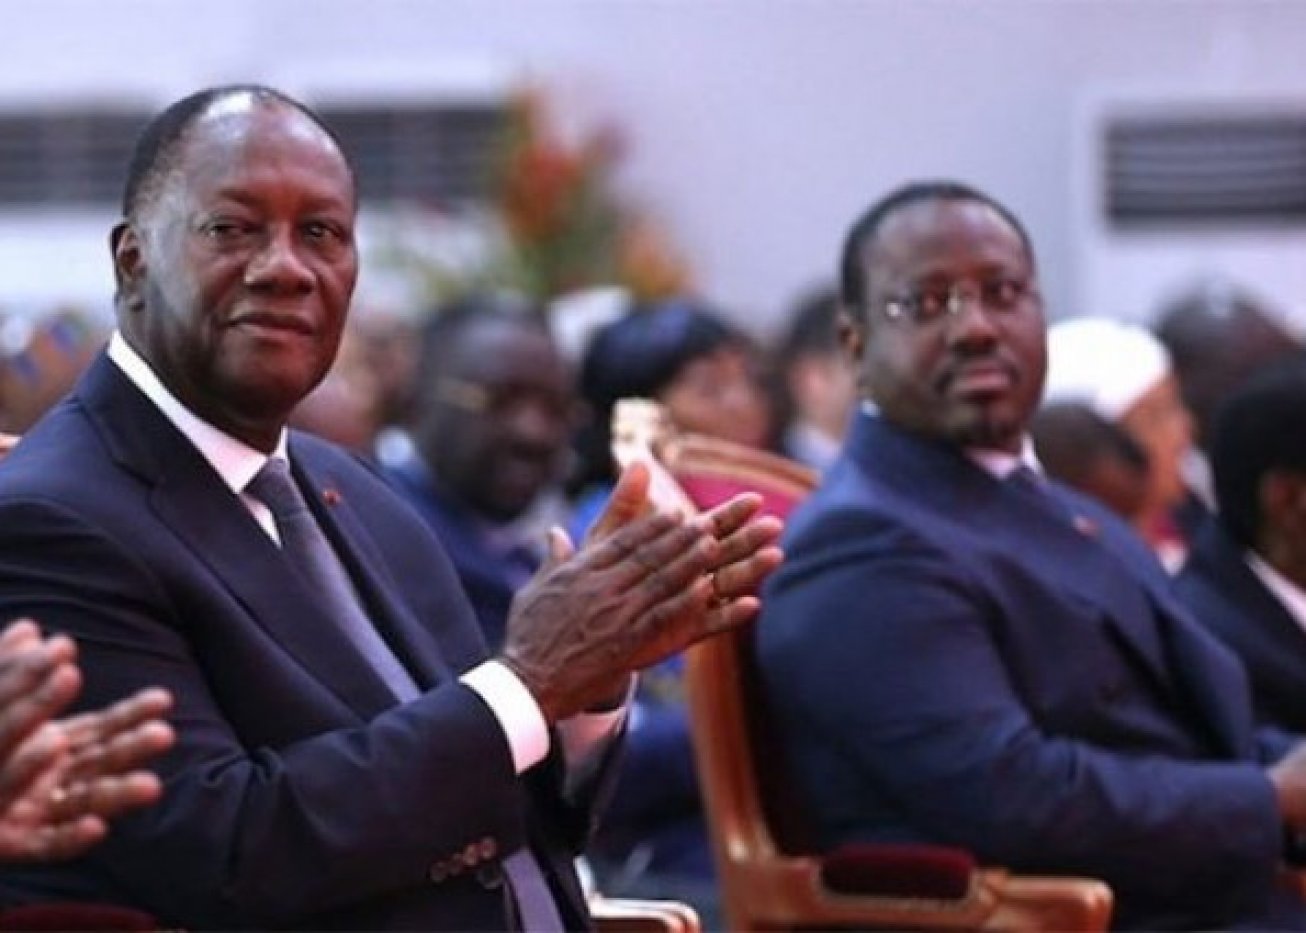 Côte d'Ivoire: le "coup" que prépare Guillaume Soro, ce que "sait" Alassane Ouattara